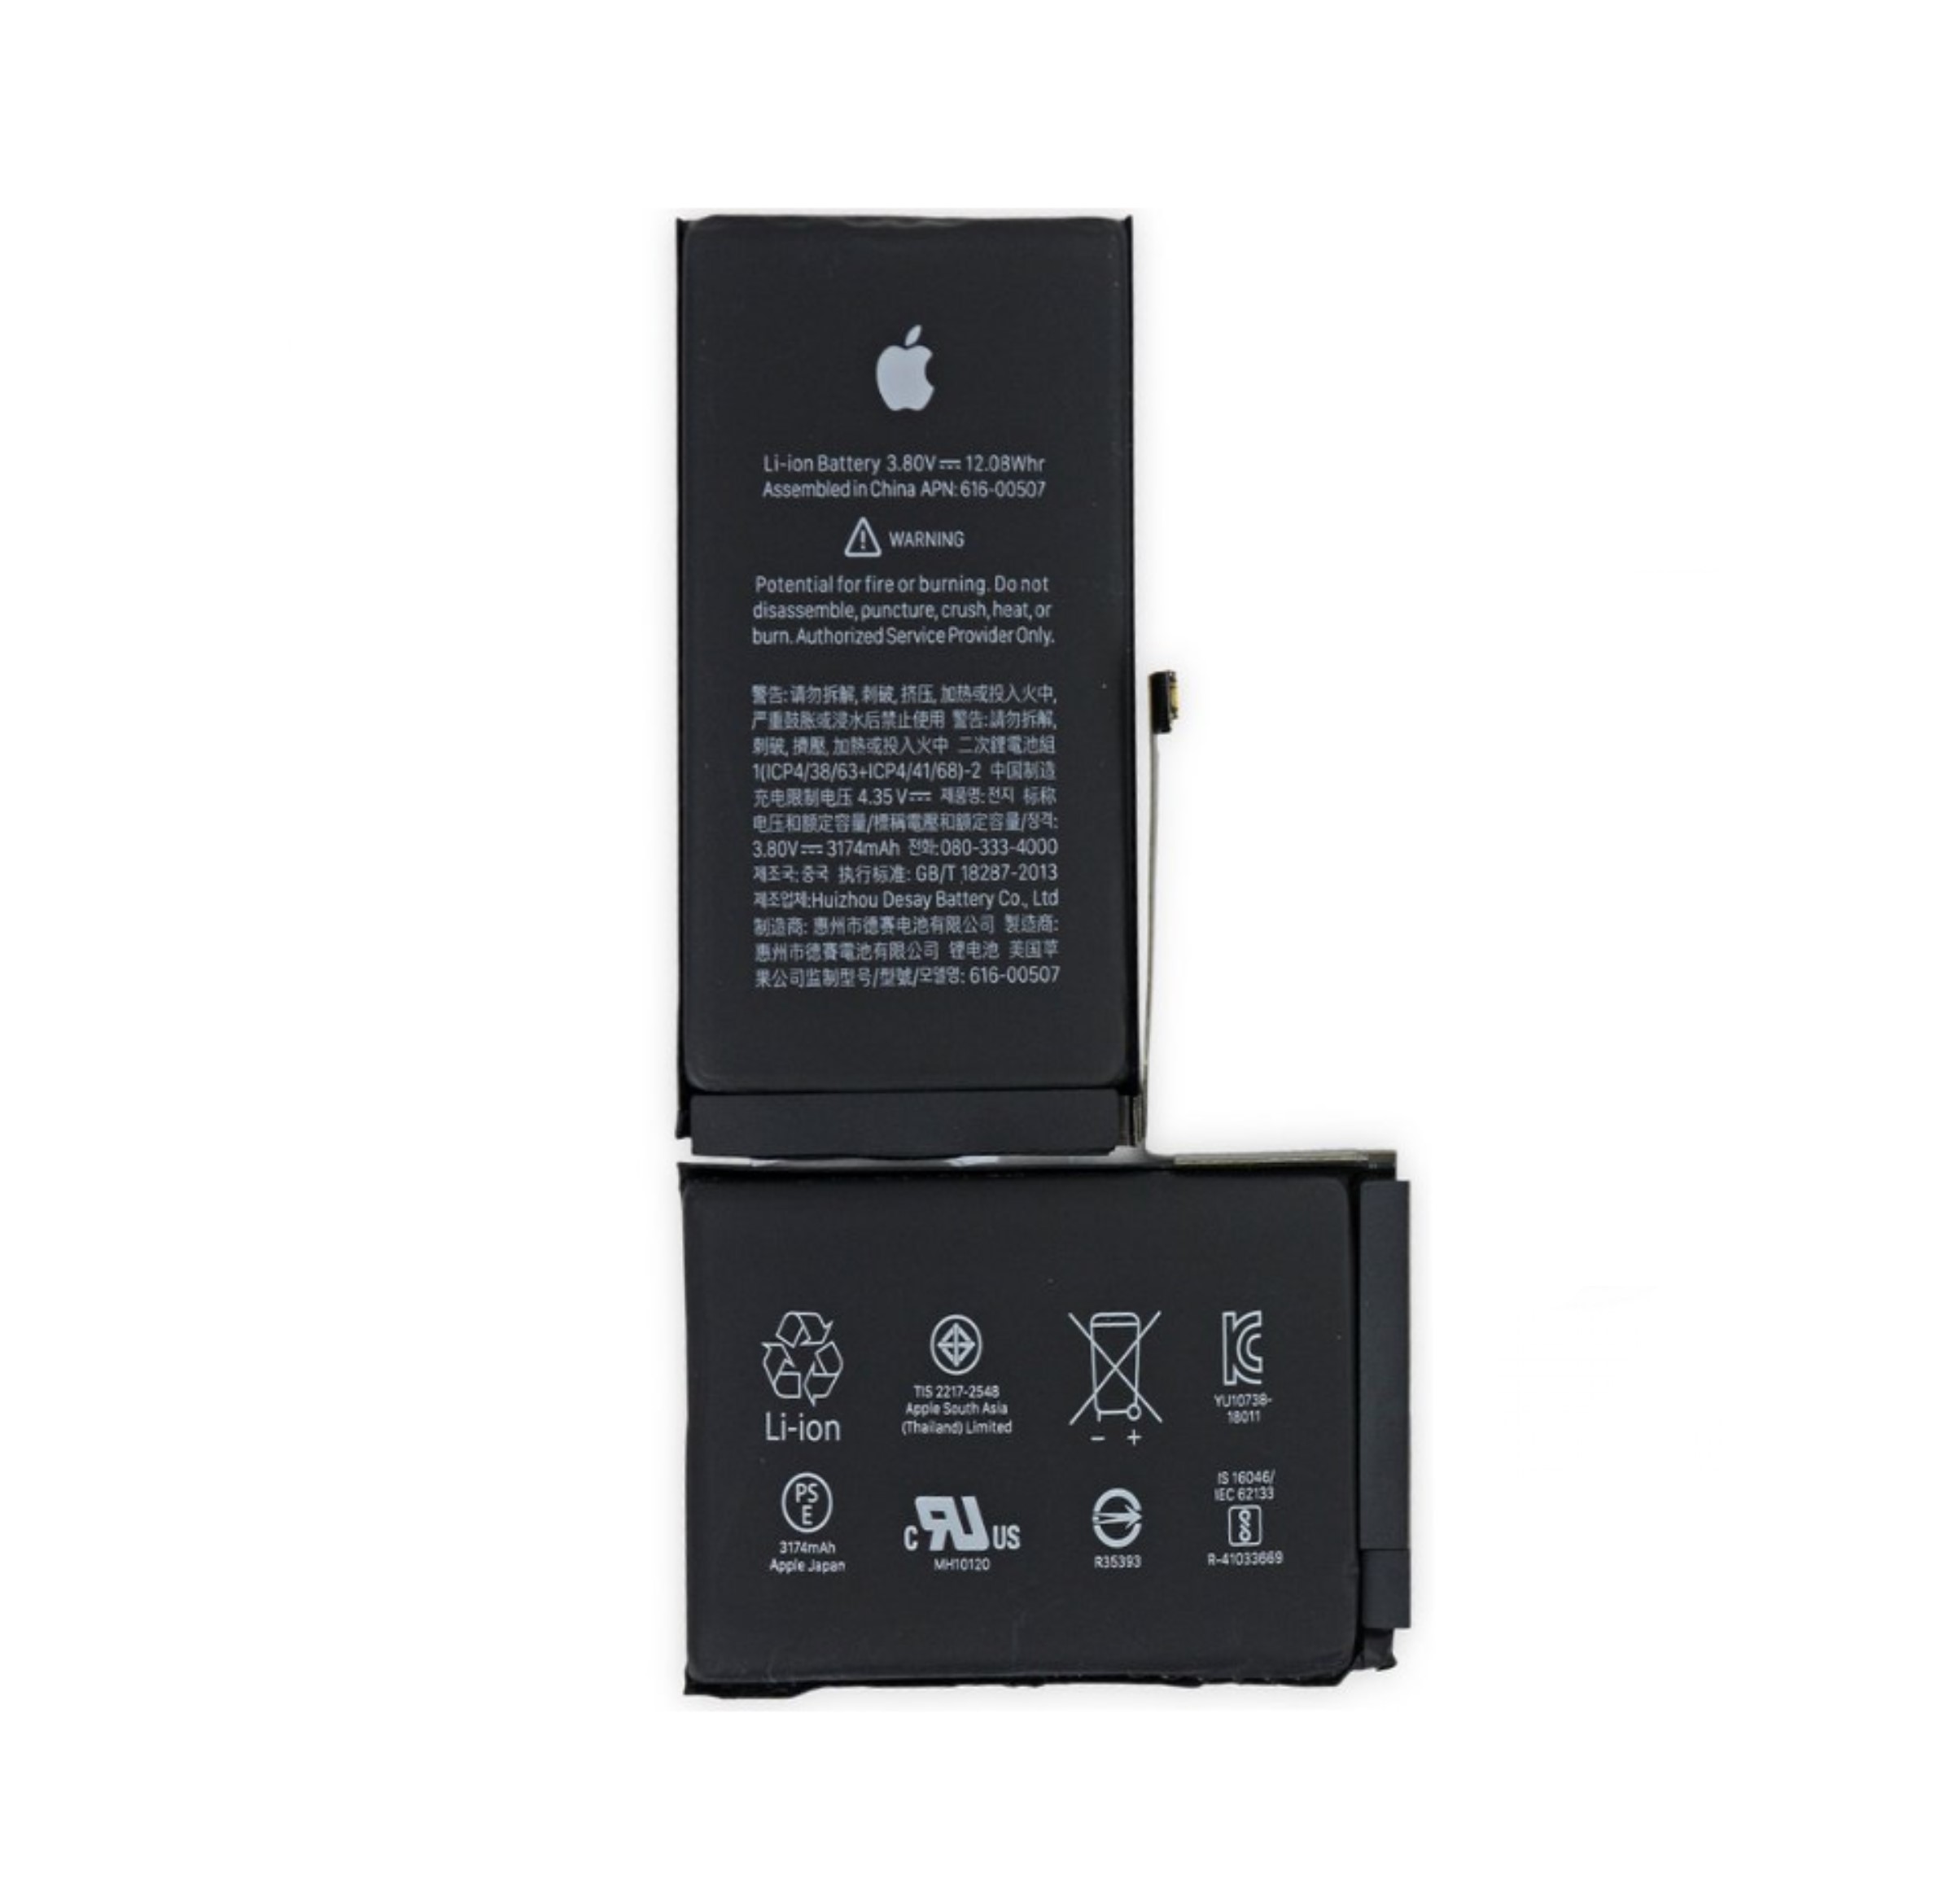 Как заменить аккумулятор Apple iPhone 4 2010 (A1332, A1349)